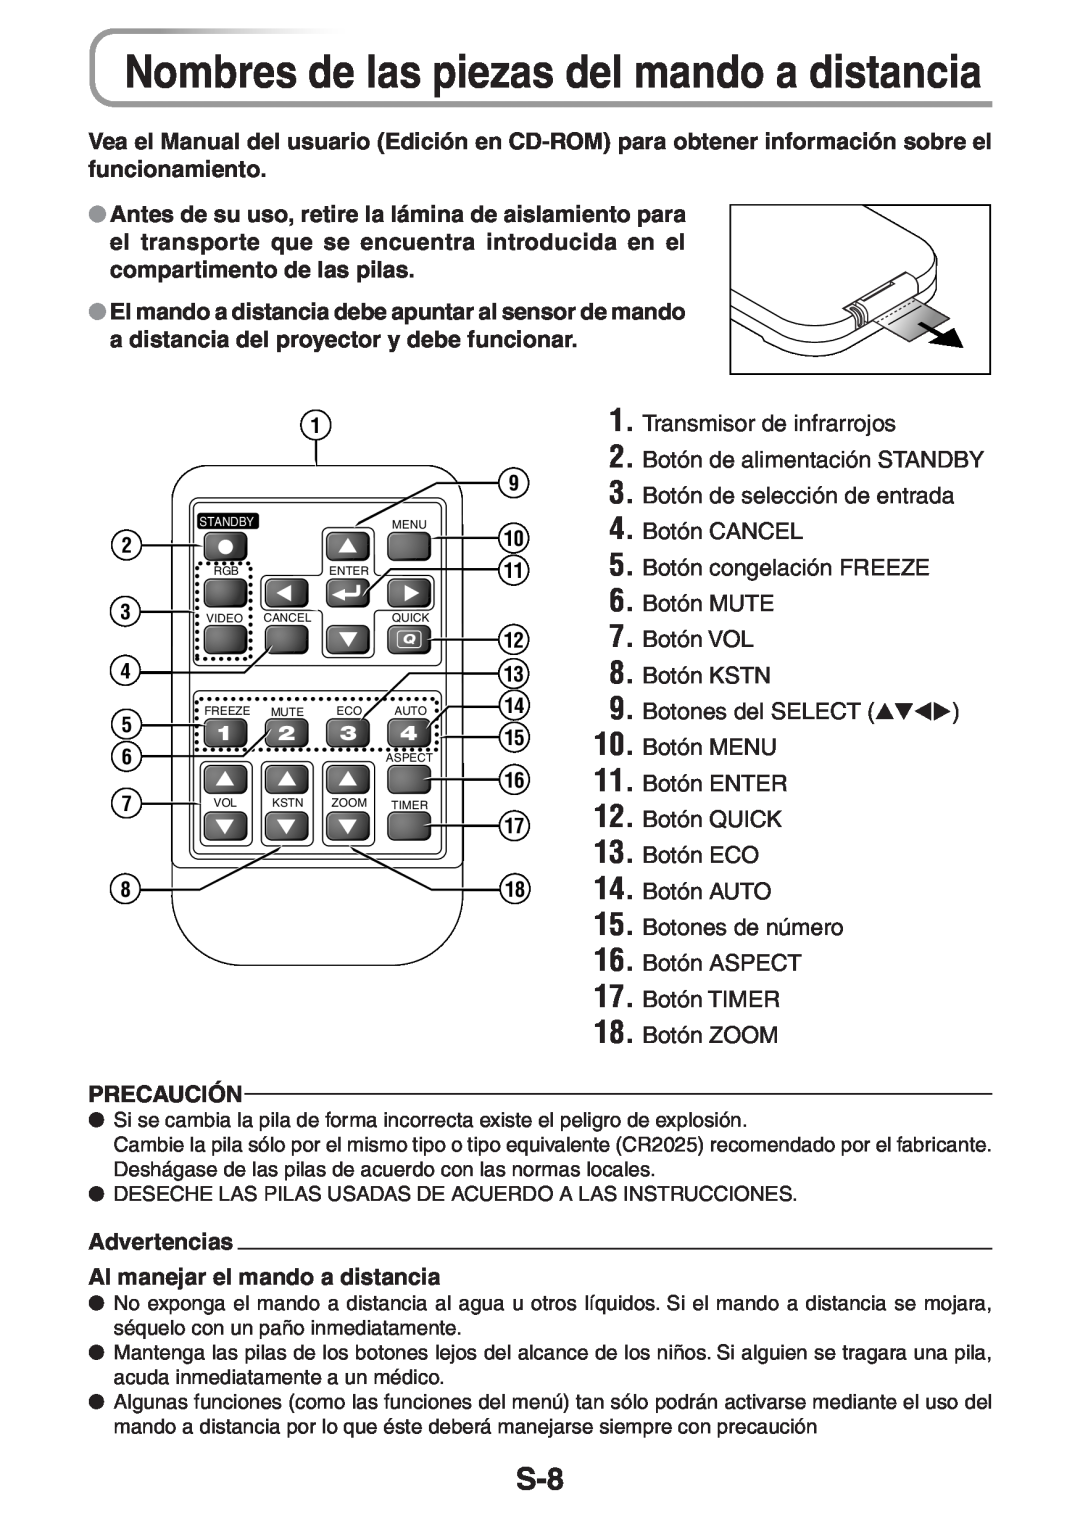 3M PX5 user manual Nombres de las piezas del mando a distancia, Precaución, Advertencias Al manejar el mando a distancia 